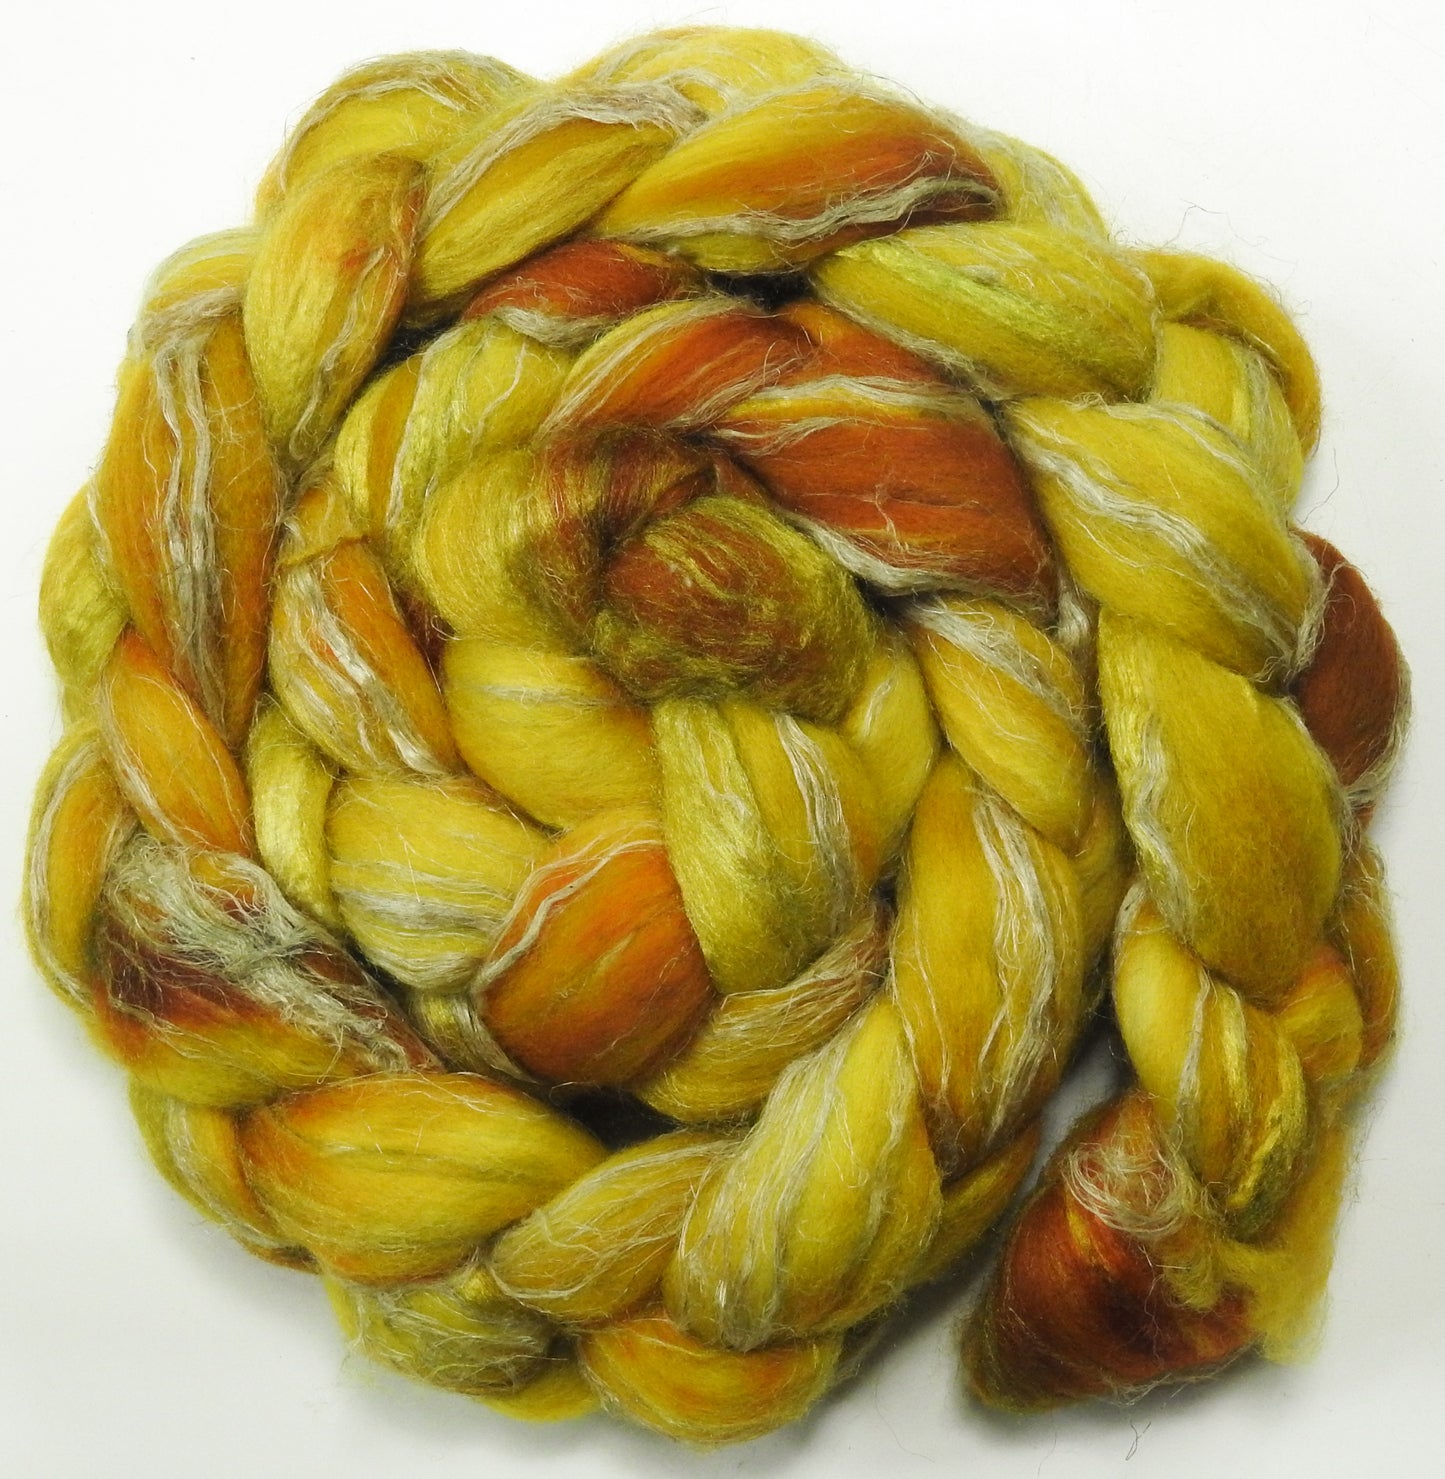 Sunflower (5.9 oz) - Merino/ Tussah Silk/ Natural Flax (50/25/25)